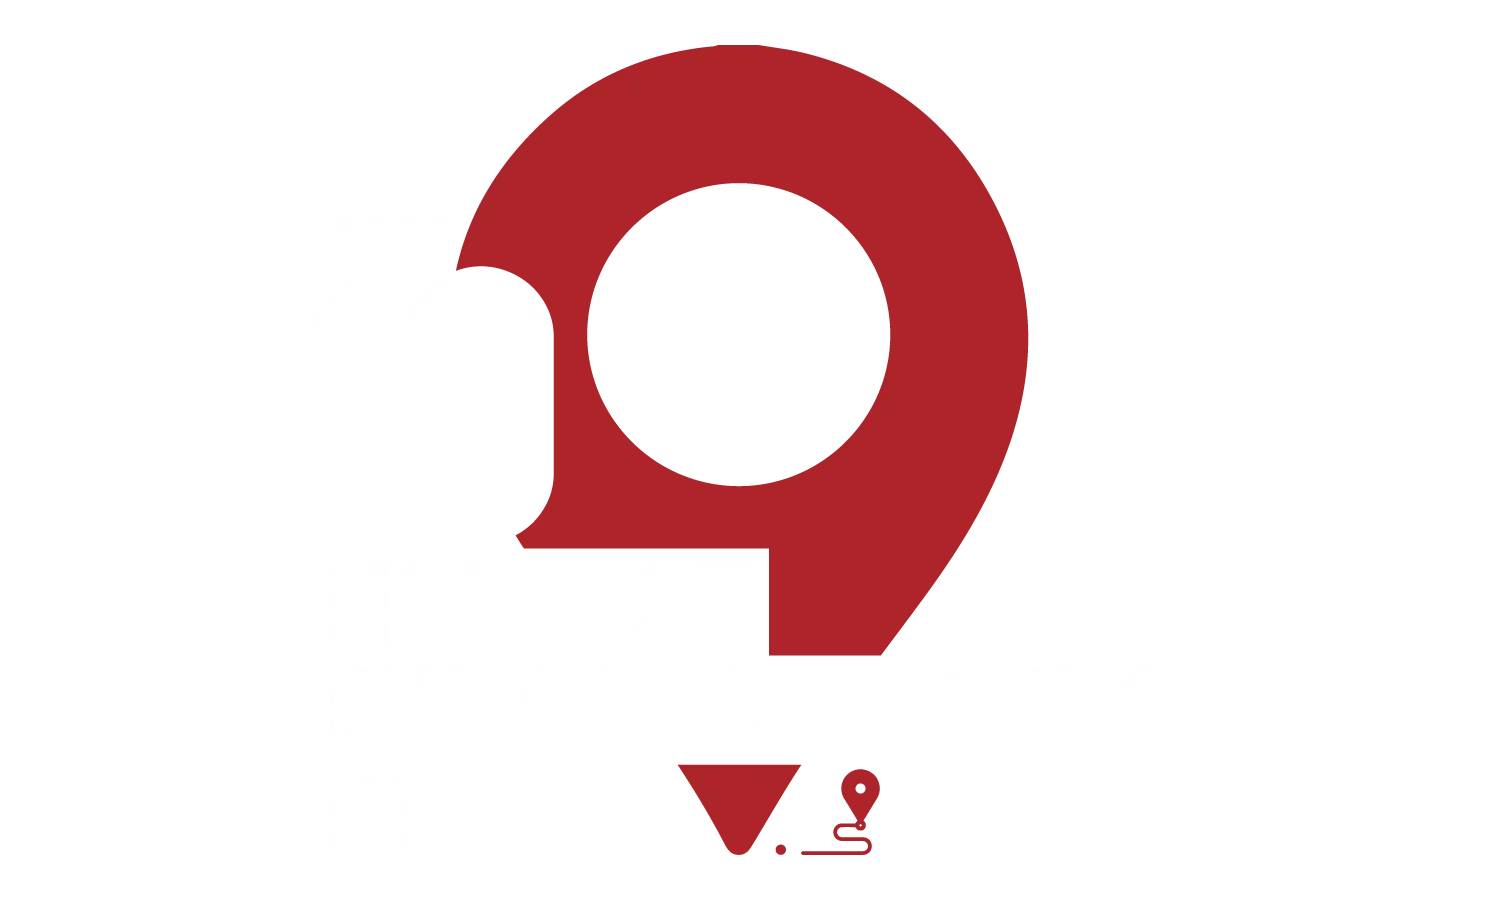 10 Hottest Franchises Award Logo